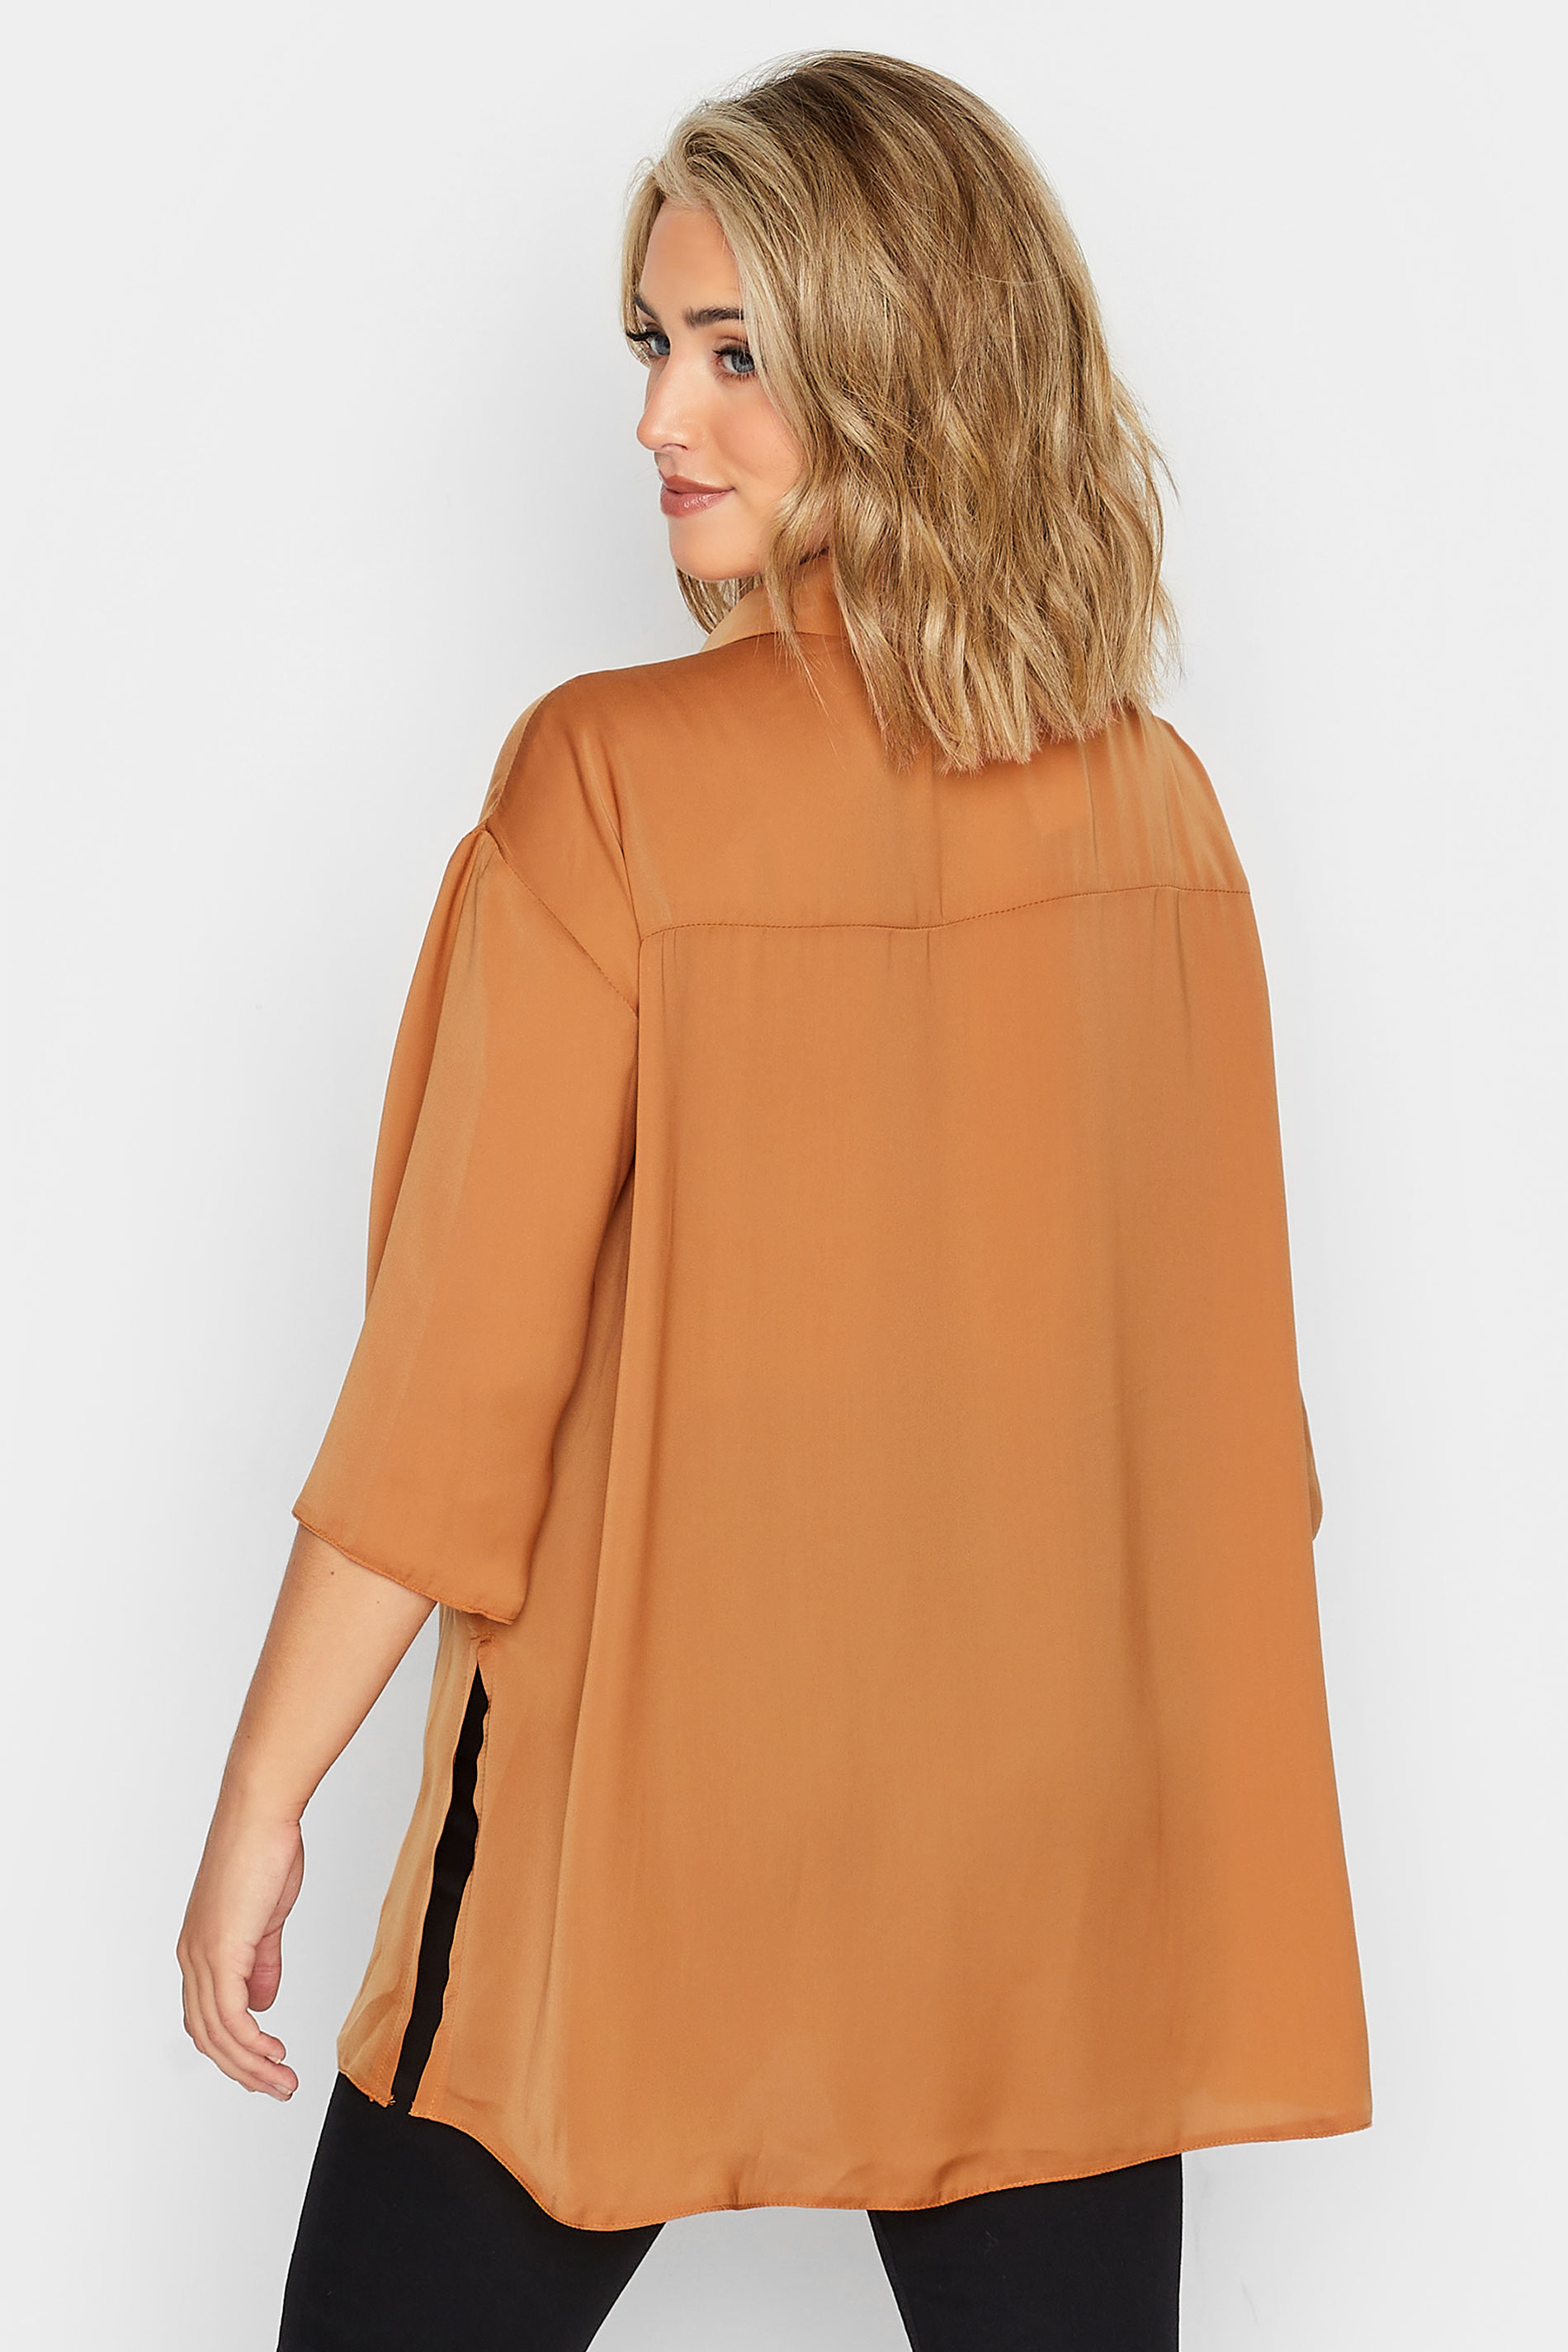 YOURS Plus Size Orange Satin Shirt | Yours Clothing 3